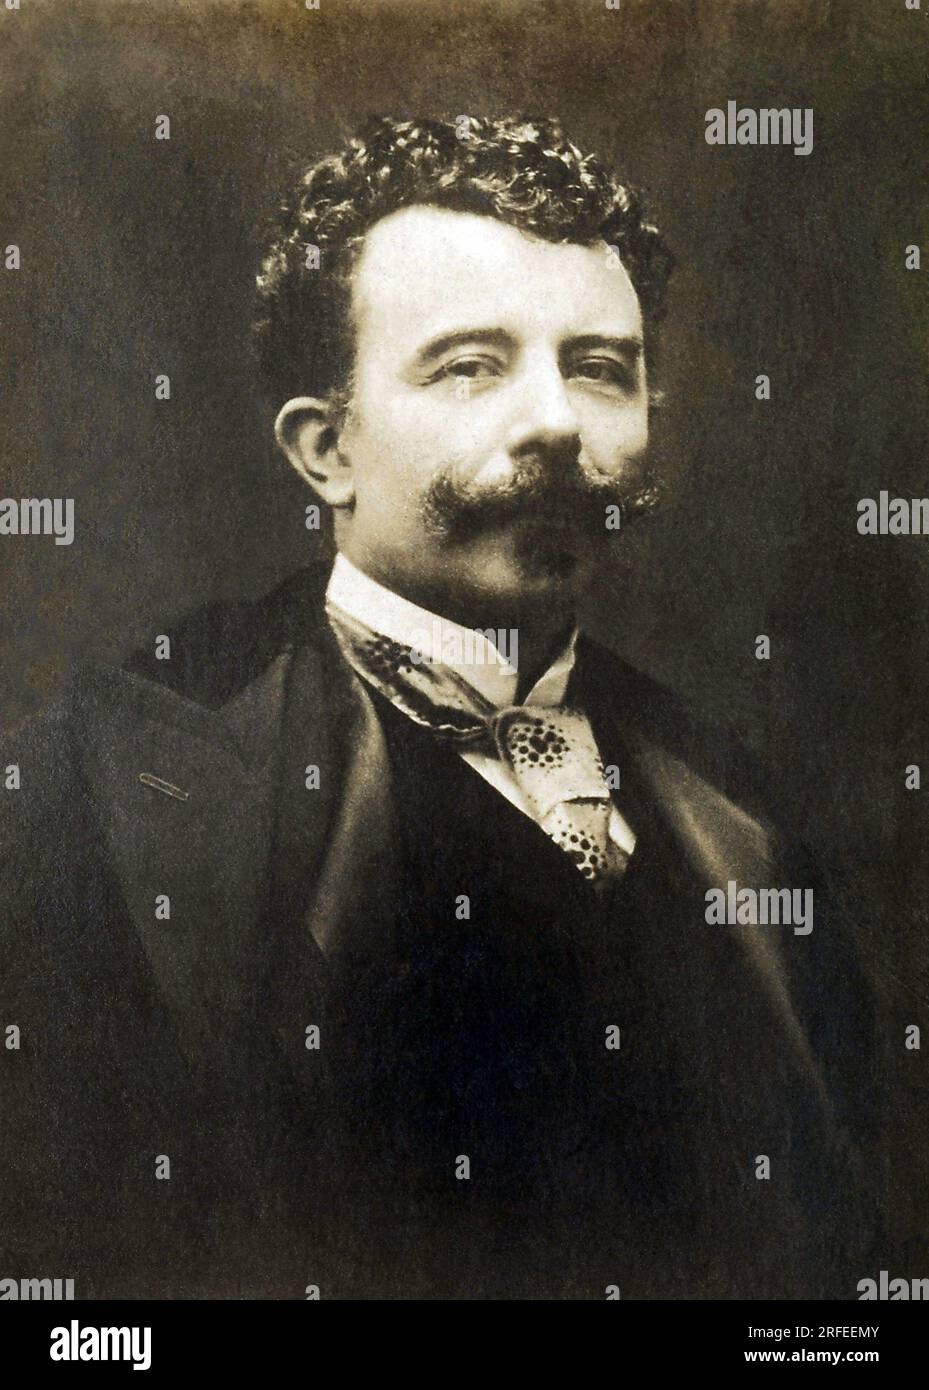 Portrait de Felicien Champsaur (1858-1934), ecrivain francais. Fotografie, Debüt du 20e Siecle. Stockfoto